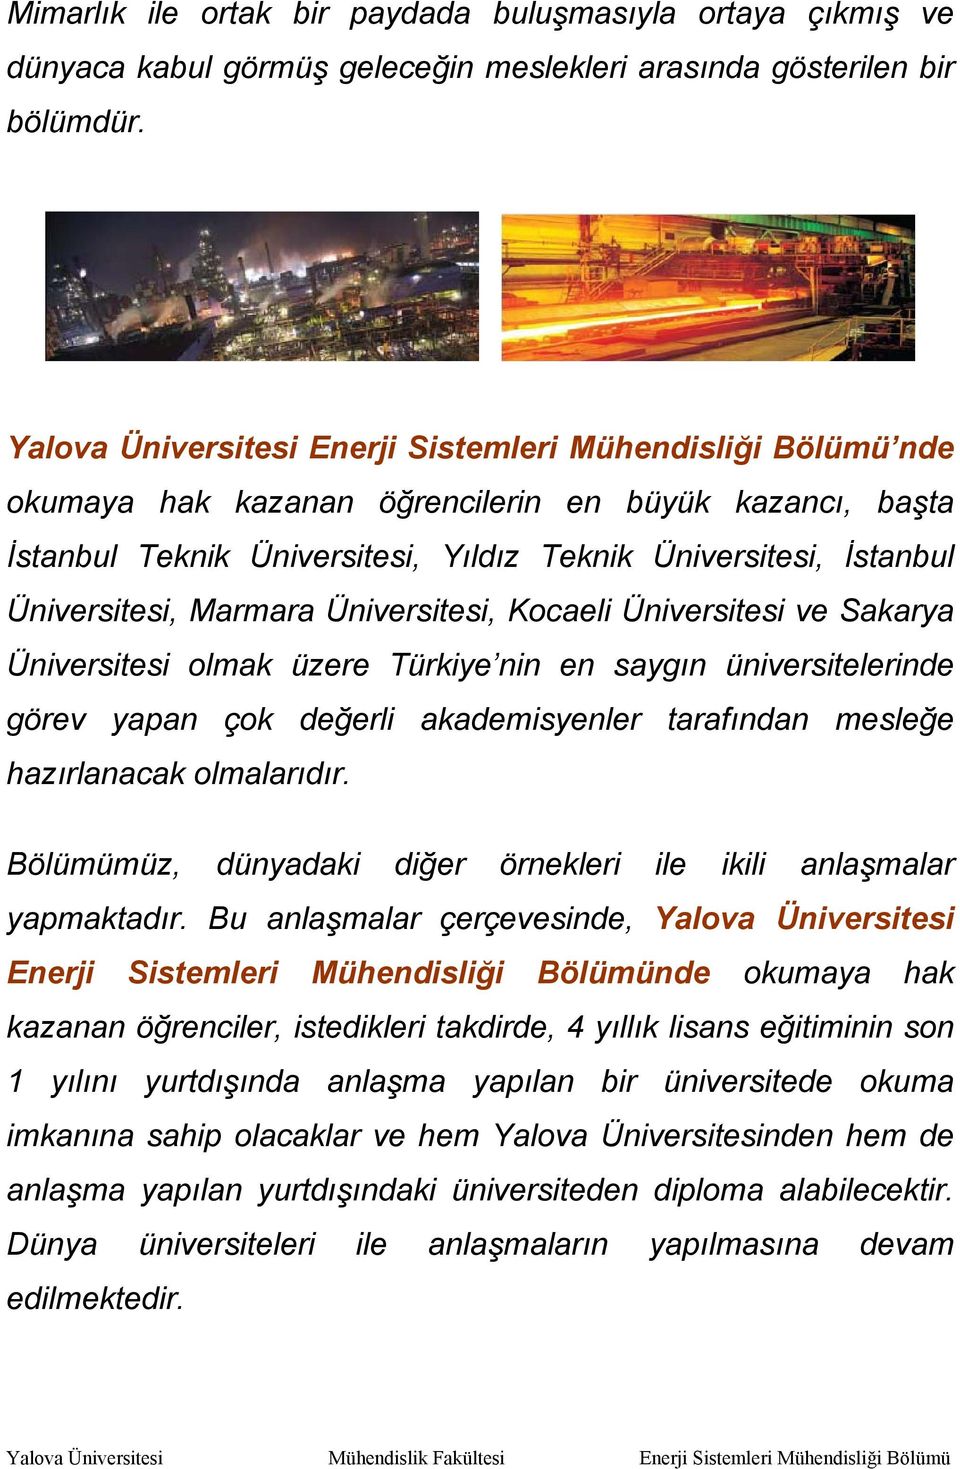 Marmara Üniversitesi, Kocaeli Üniversitesi ve Sakarya Üniversitesi olmak üzere Türkiye nin en saygın üniversitelerinde görev yapan çok değerli akademisyenler tarafından mesleğe hazırlanacak